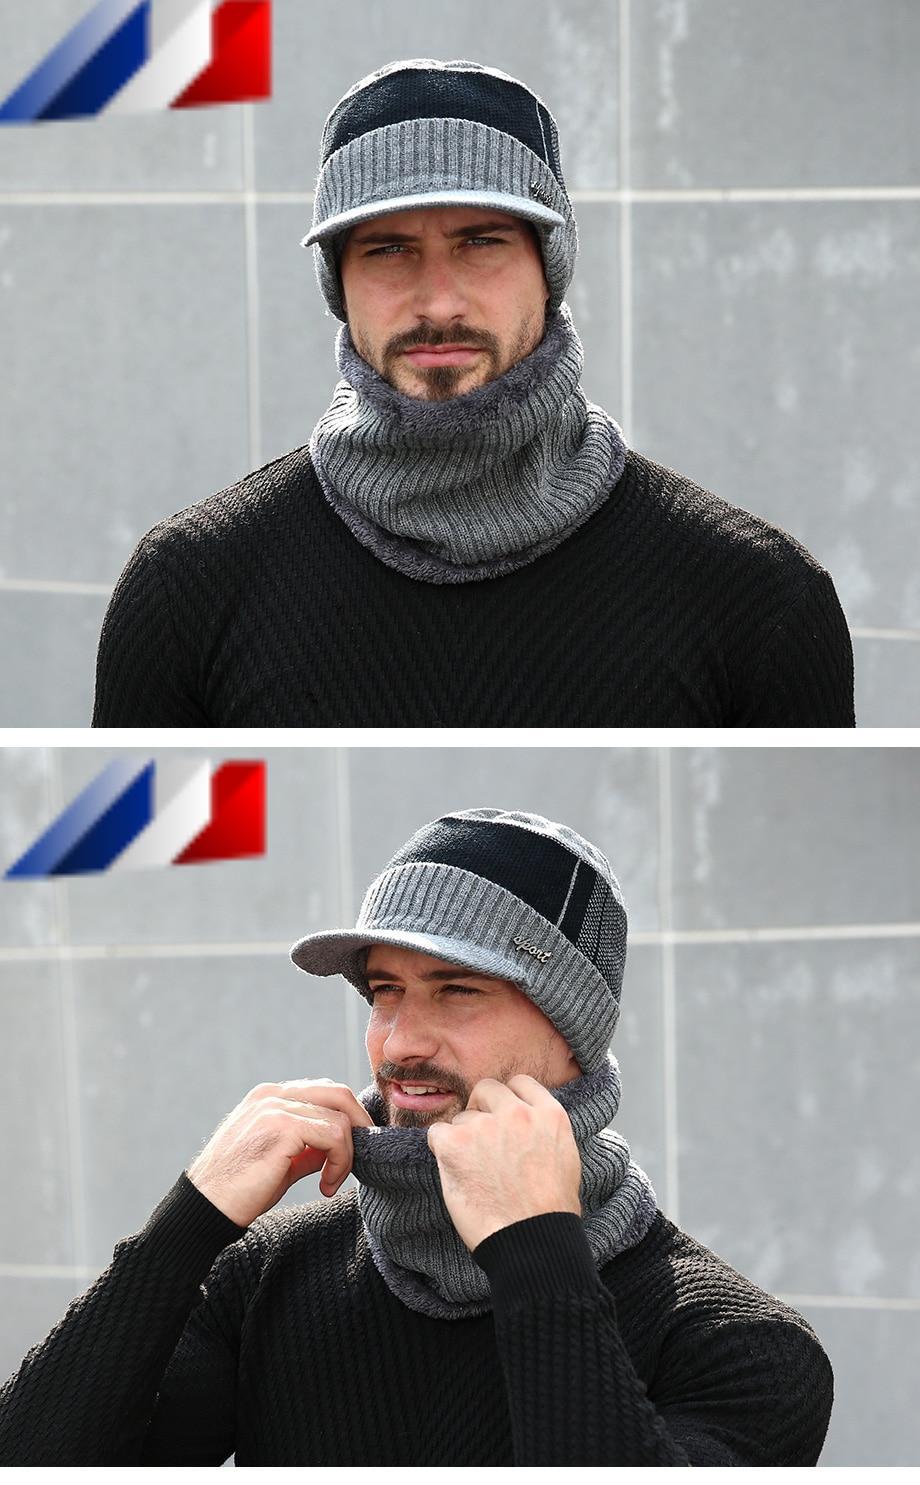 Set de gorra y cuello de invierno para hombre